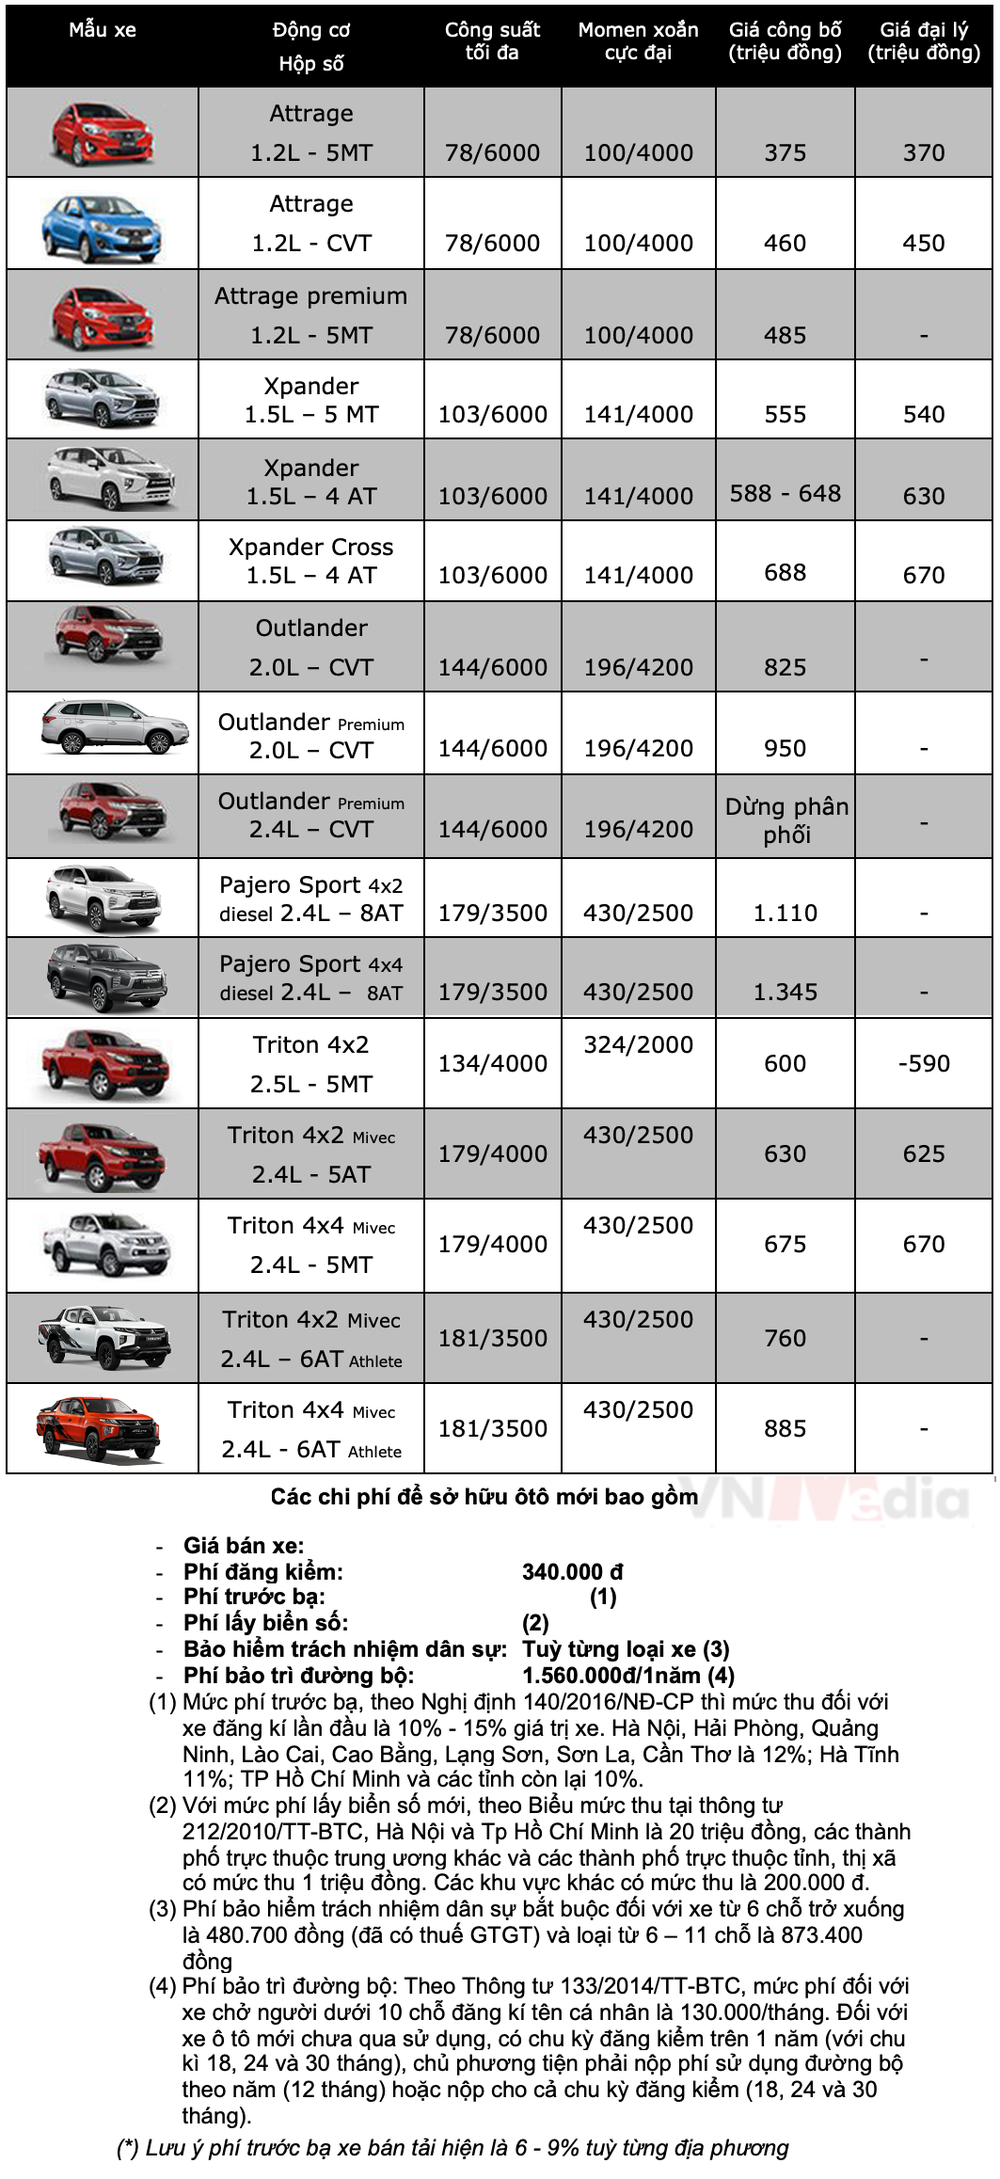 Bảng giá xe Mitsubishi tháng 3: Mitsubishi Attrage được ưu đãi 50% lệ phí trước bạ - Ảnh 2.